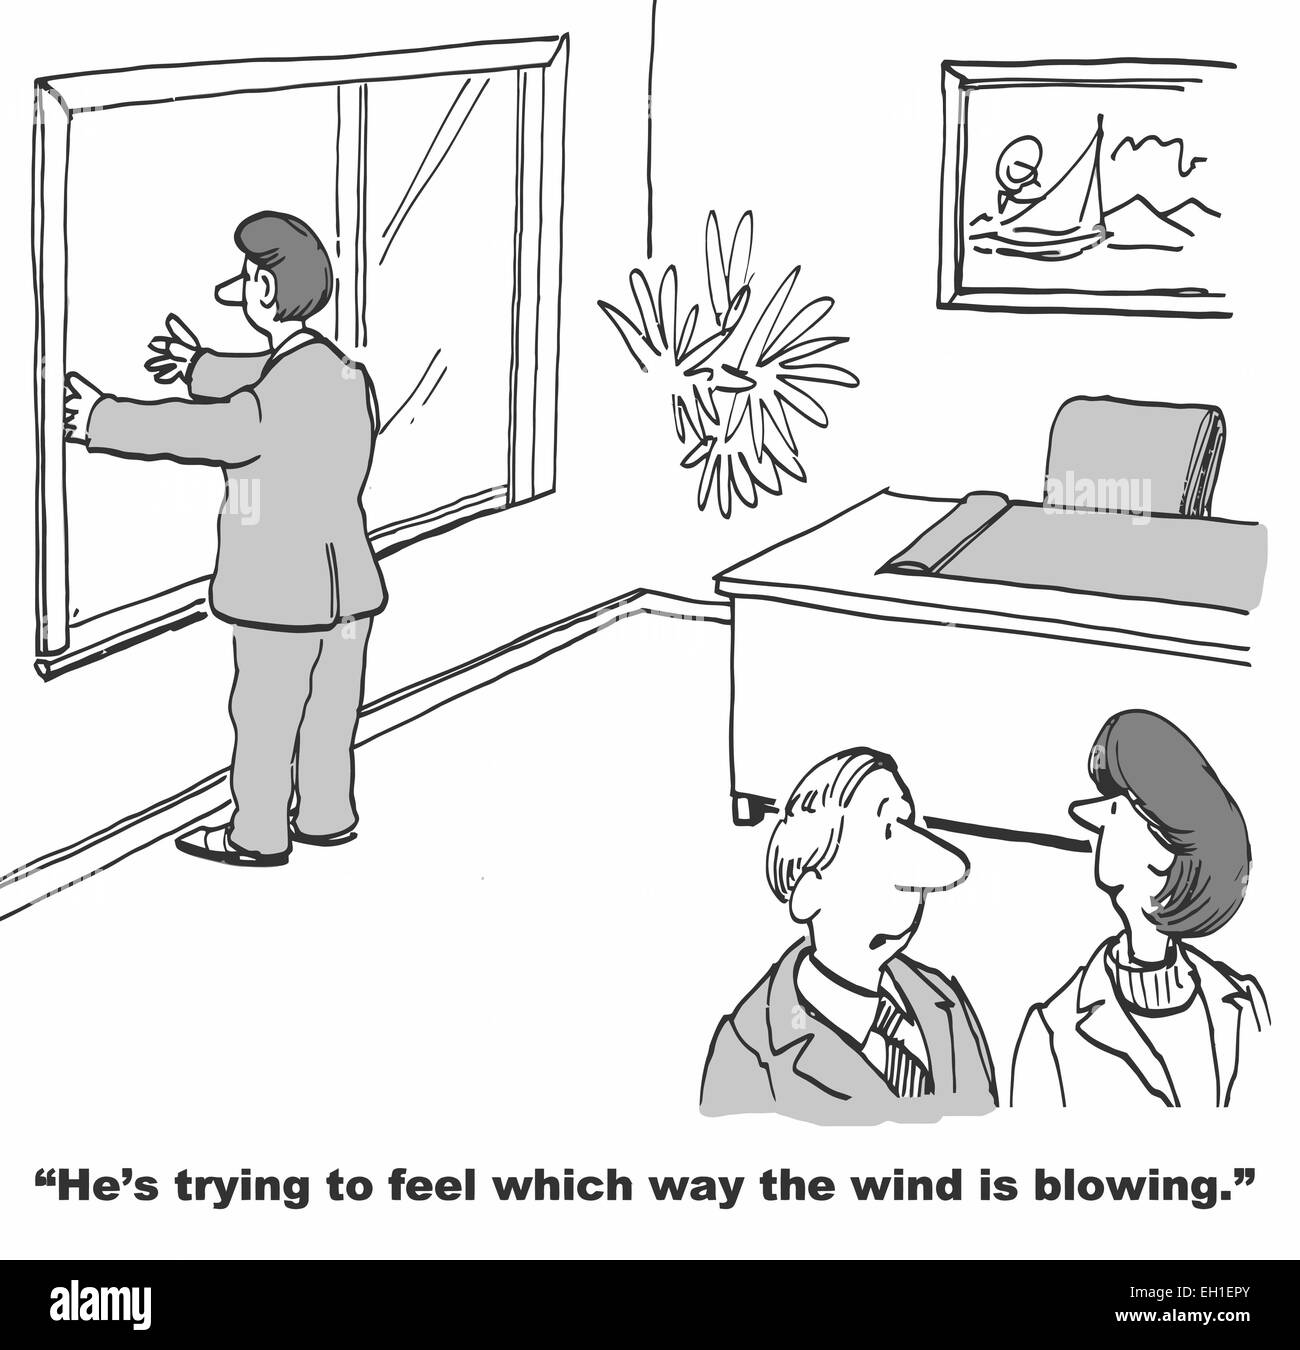 Caricature de businessman with arms out, collègue dit : il essaie de sentir de quel côté le vent souffle. Illustration de Vecteur